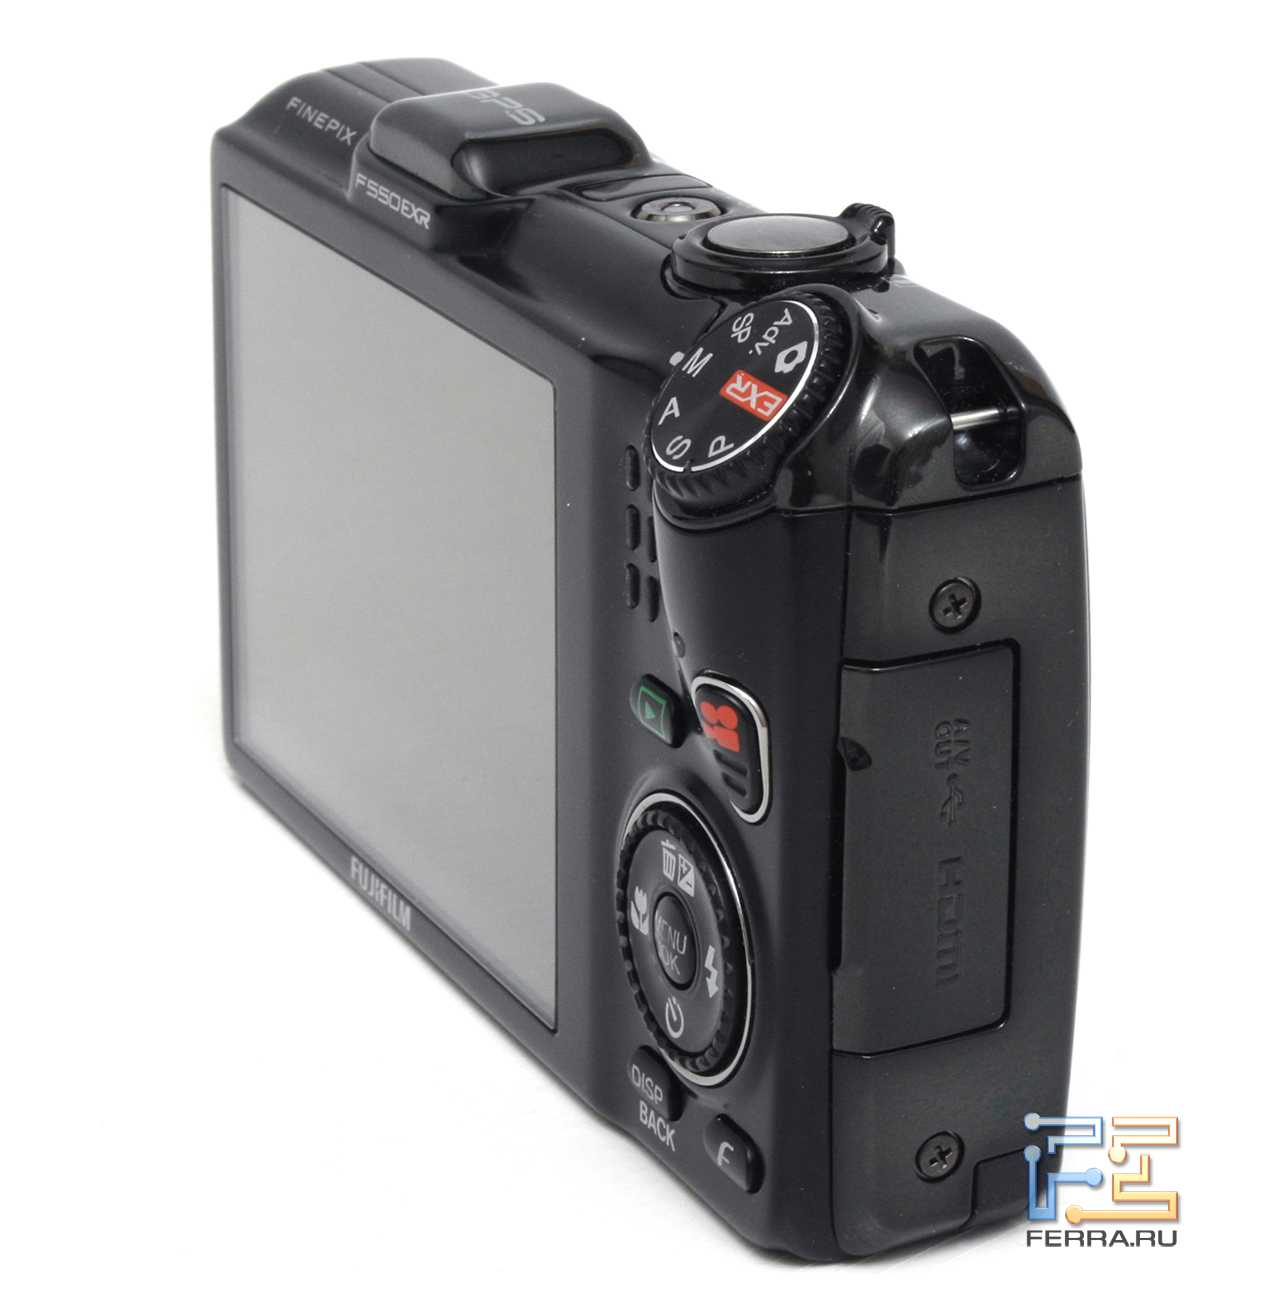 Fujifilm finepix f550exr купить по акционной цене , отзывы и обзоры.